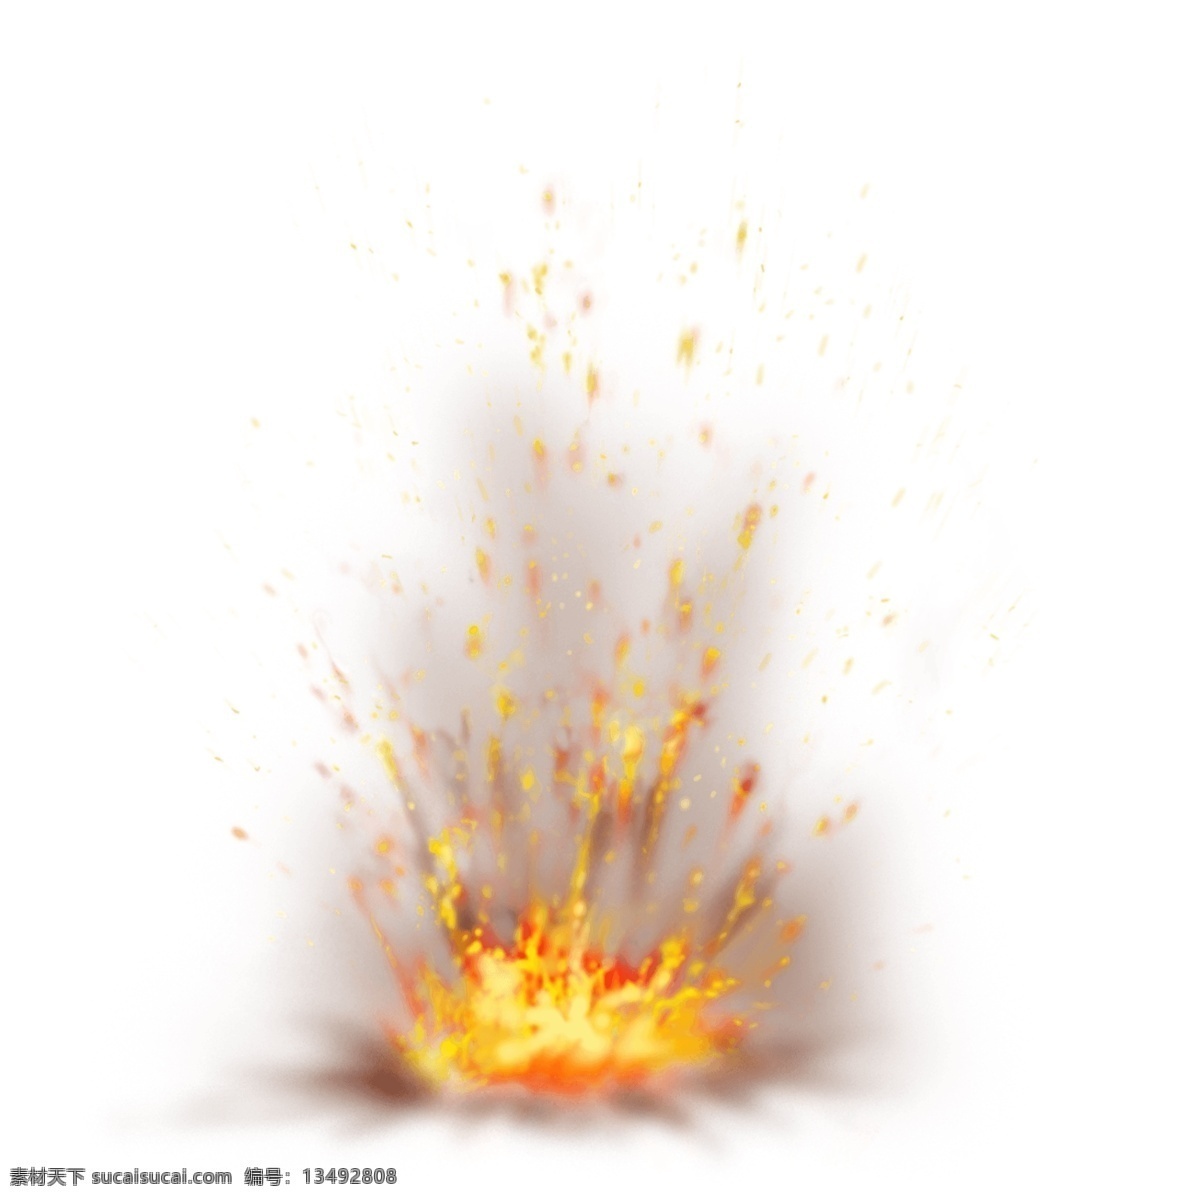 爆炸 效果 火焰 免 抠 透明 爆炸效果火焰 元素 图形 火焰海报图片 火焰广告素材 火焰海报图